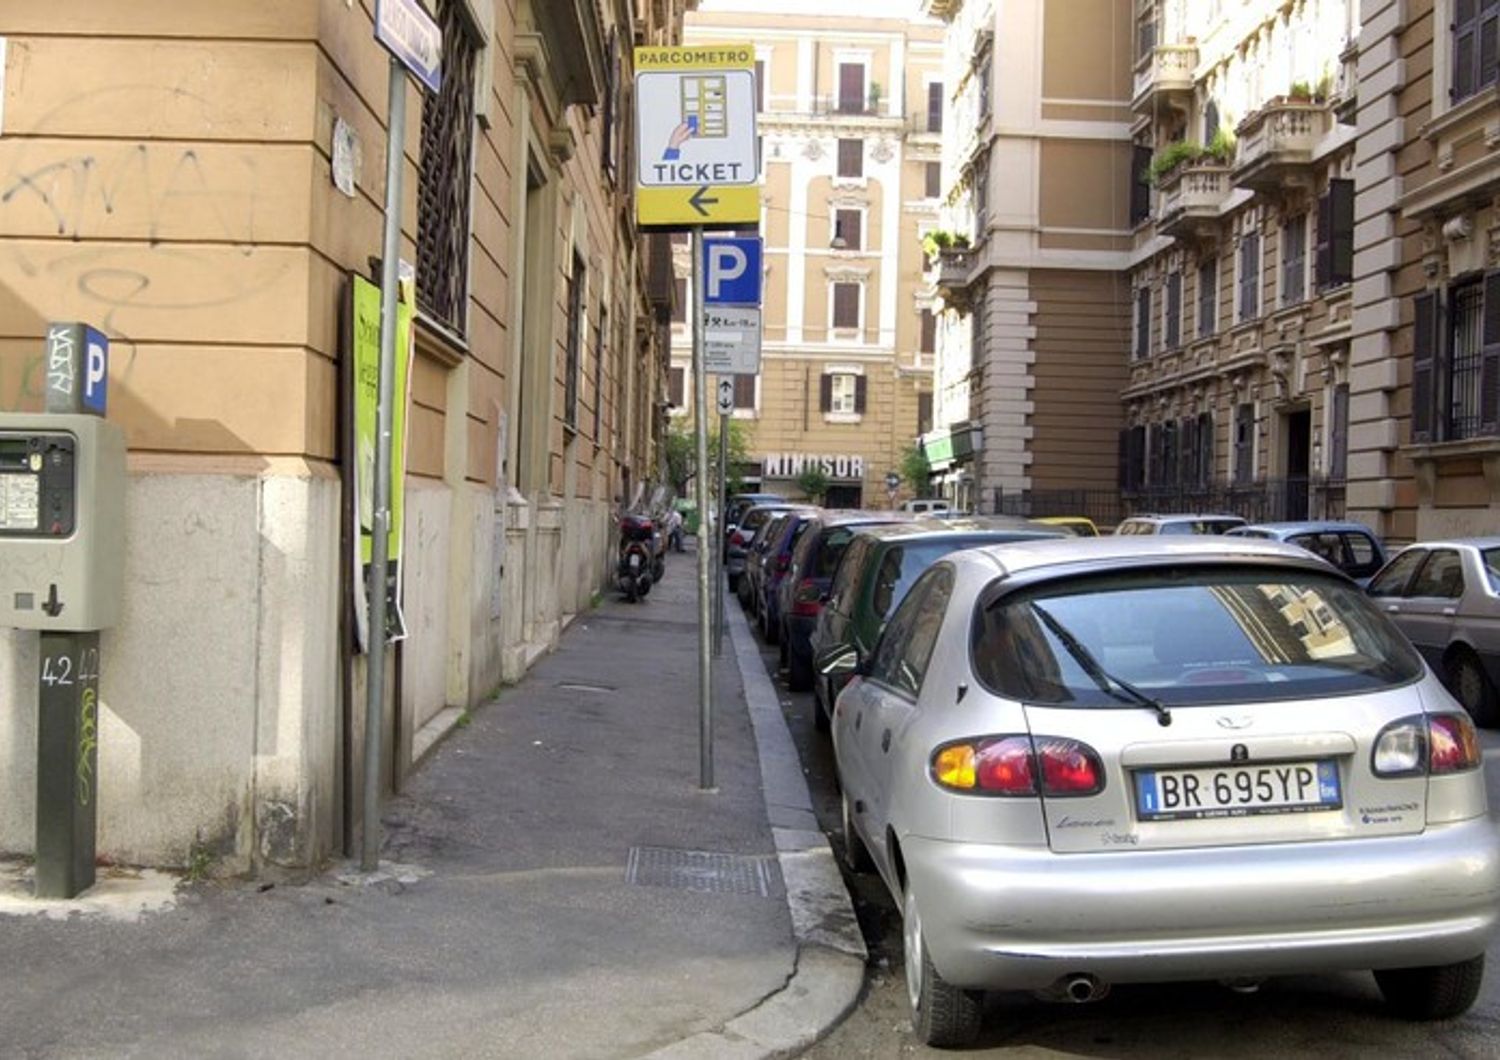 automobilisti italiani perdono 30 minuti giorno parcheggio